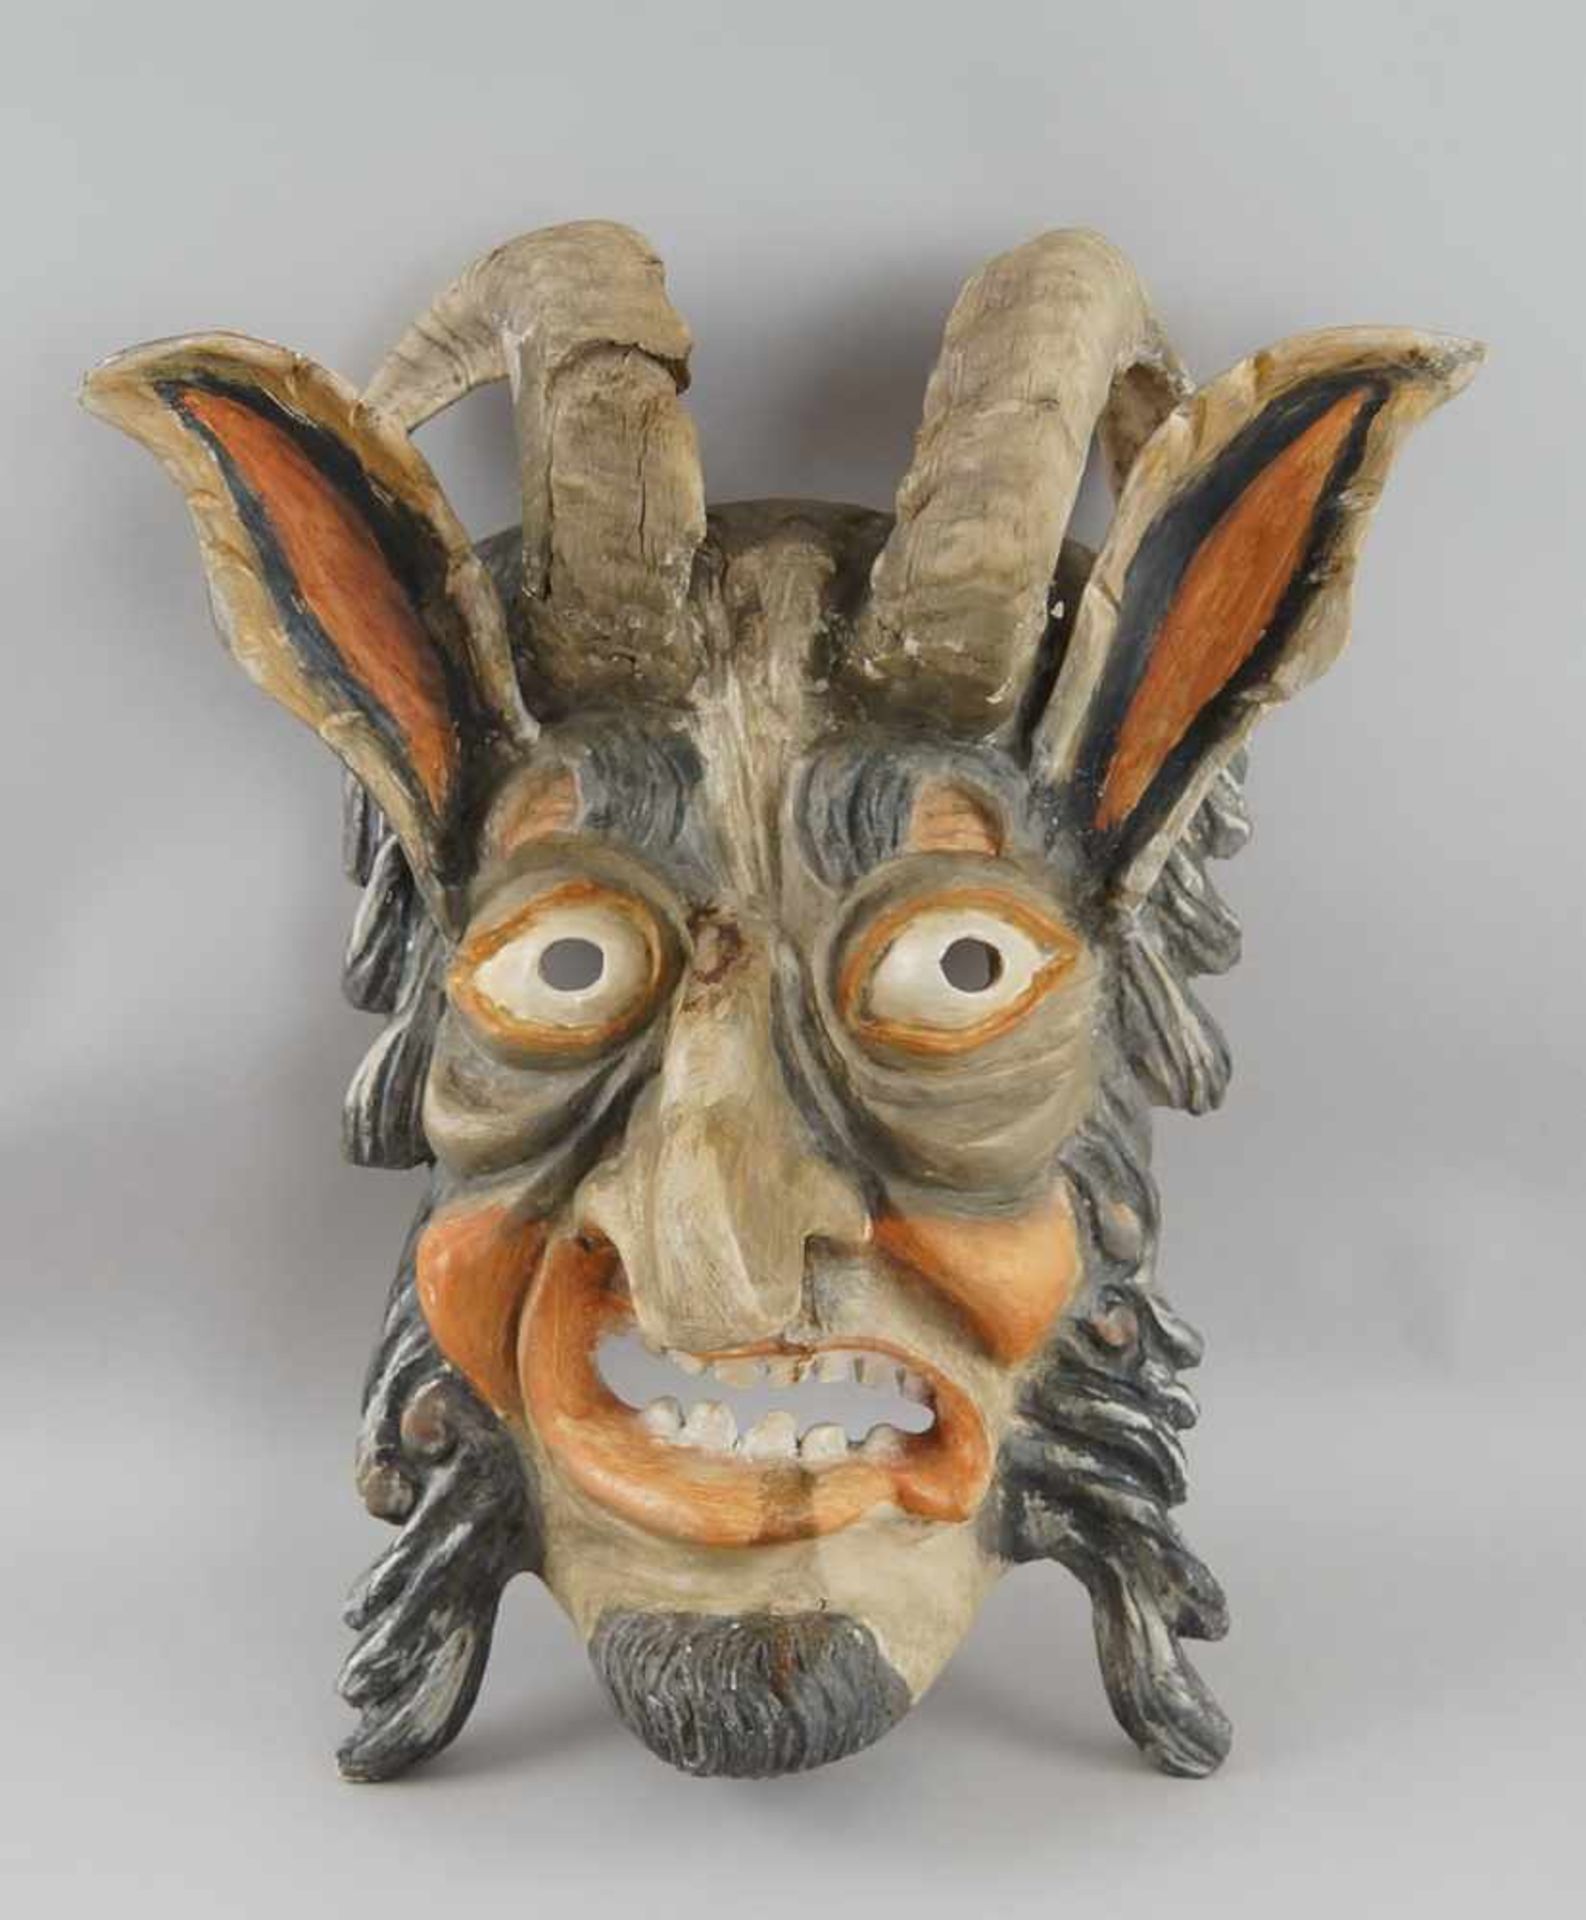 Grimmige Perchtenmaske, Holz geschnitzt und gefasst, mit Tierhörnern, 47x39cm- - -24.00 % buyer's